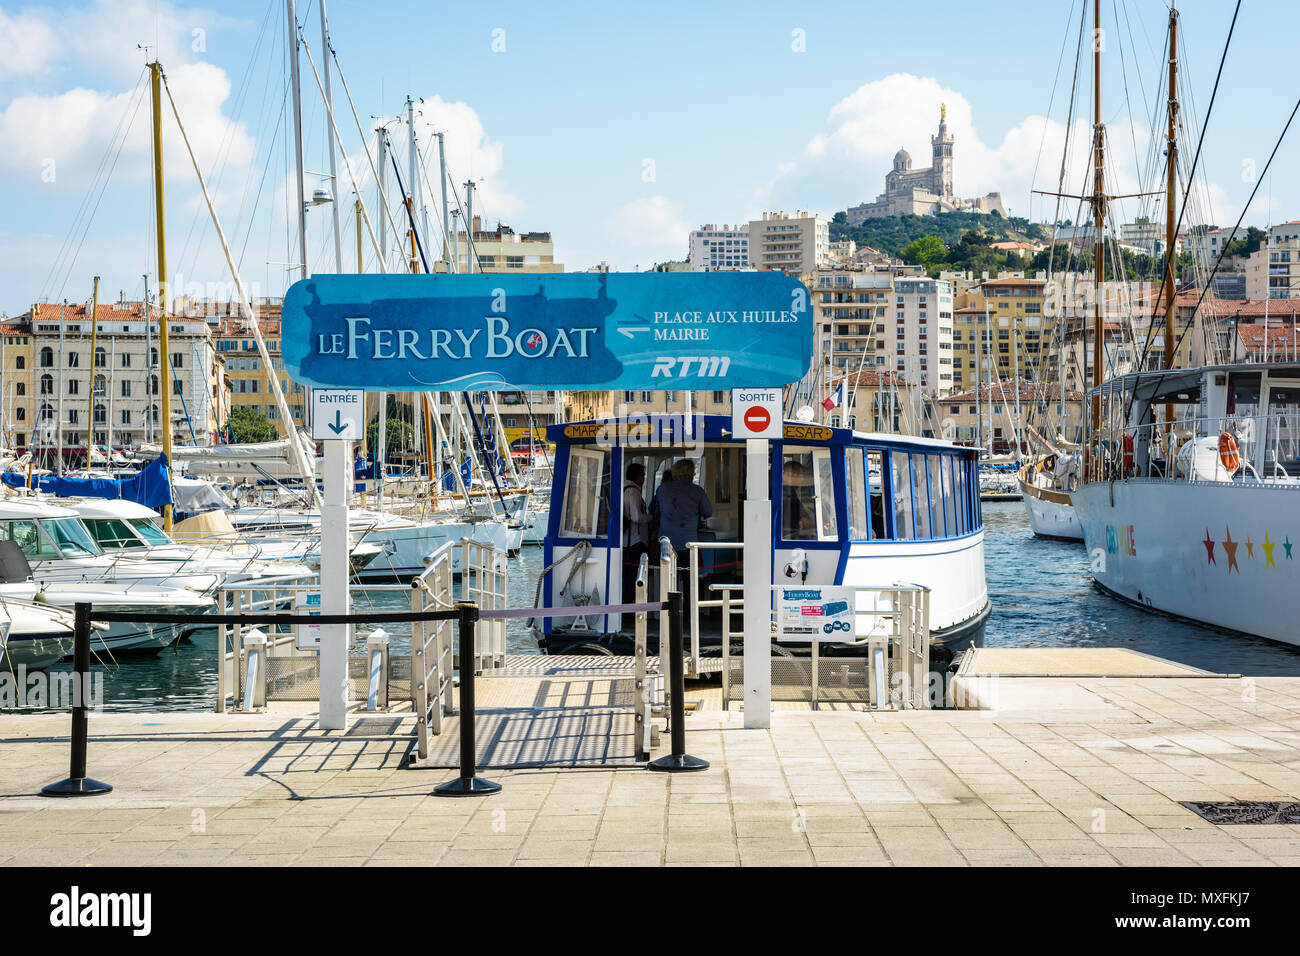 Le bateau, une course-navette maritime public aujourd'hui par le RTM, permet de traverser le Vieux Port de Marseille depuis 1880, sous la protection de Notre-Da Banque D'Images